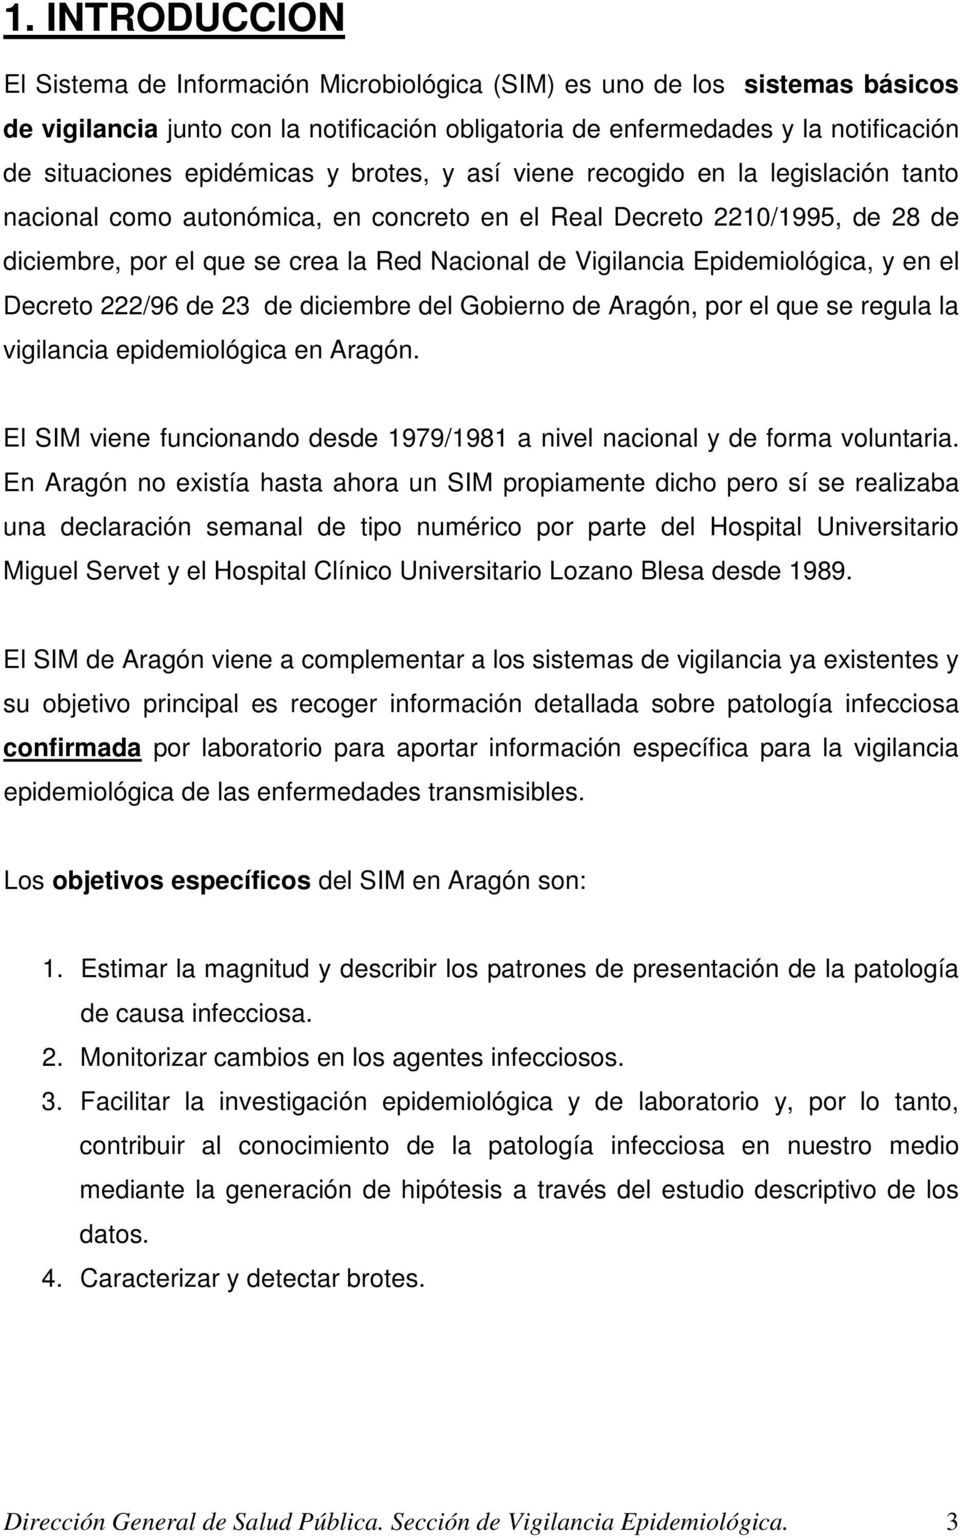 Vigilancia Epidemiológica, y en el Decreto 222/96 de 23 de diciembre del Gobierno de Aragón, por el que se regula la vigilancia epidemiológica en Aragón.